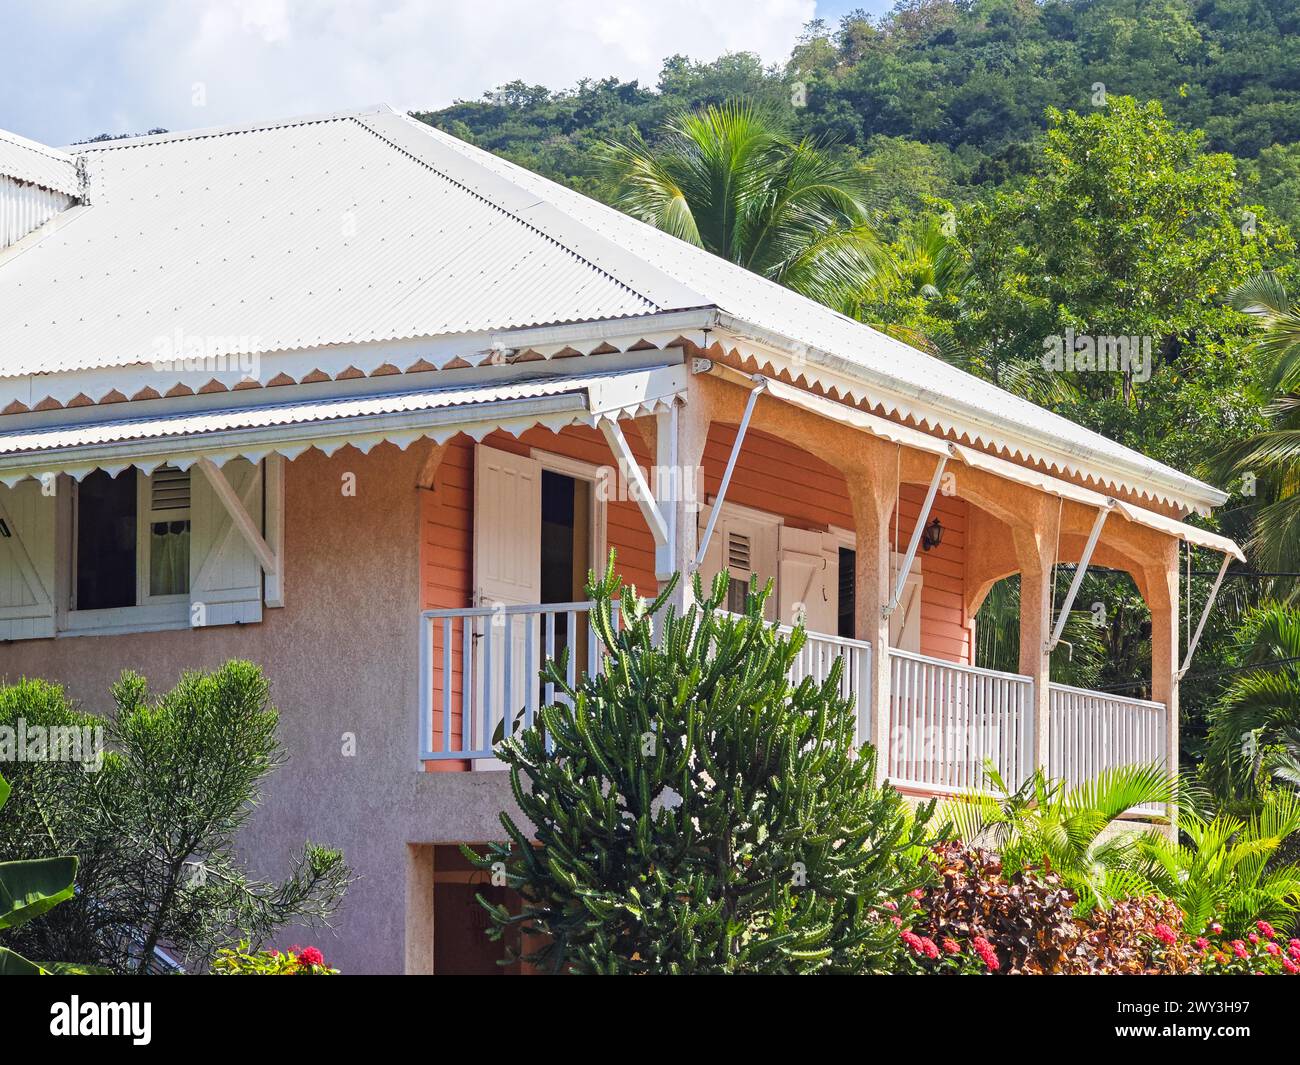 Deshaies, storico edificio caraibico in legno di una strada a Guadalupa, Caraibi, Antille francesi Foto Stock